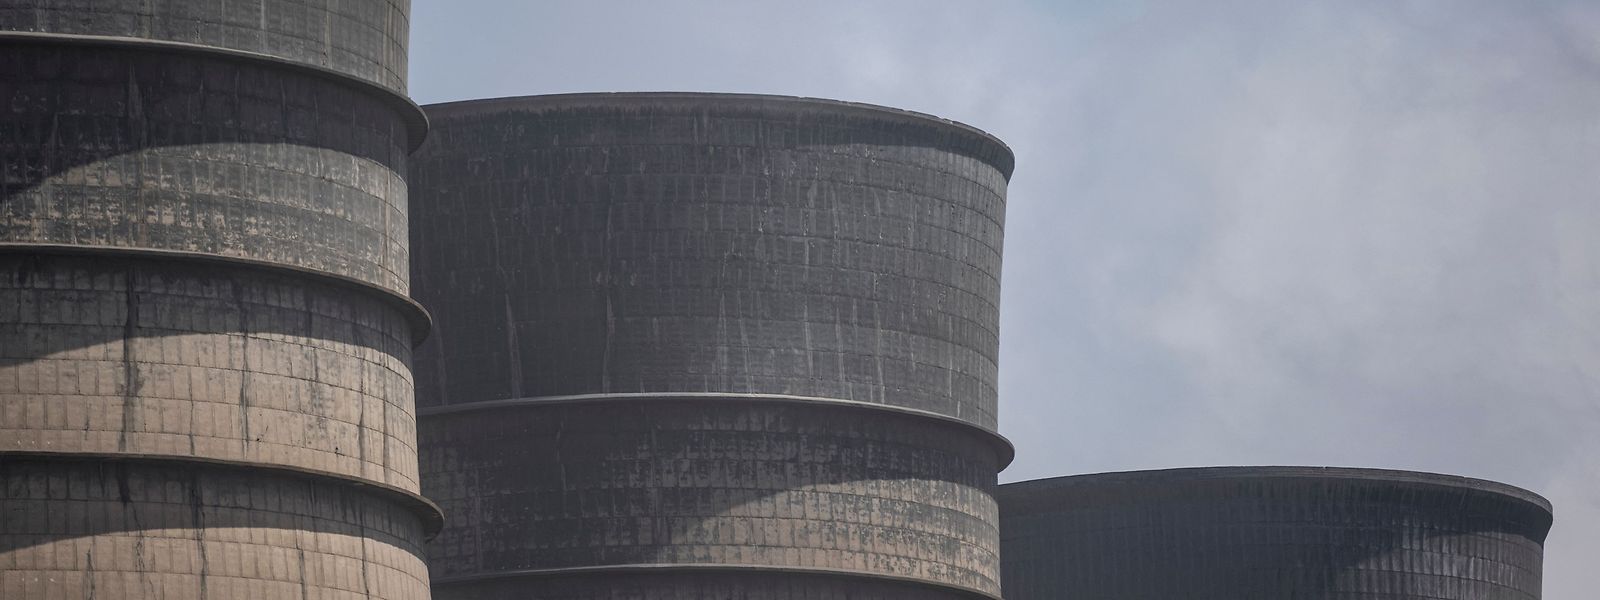 Südafrika ist nicht nur Opfer, sondern zugleich auch Mitverursacher der Klimaerwärmung: 15 Kohle-Kraftwerke, die gut 44 Gigawatt Elektrizität herstellen, blasen jährlich 1.600 Kilotonnen Schwefeldioxid in die Luft.